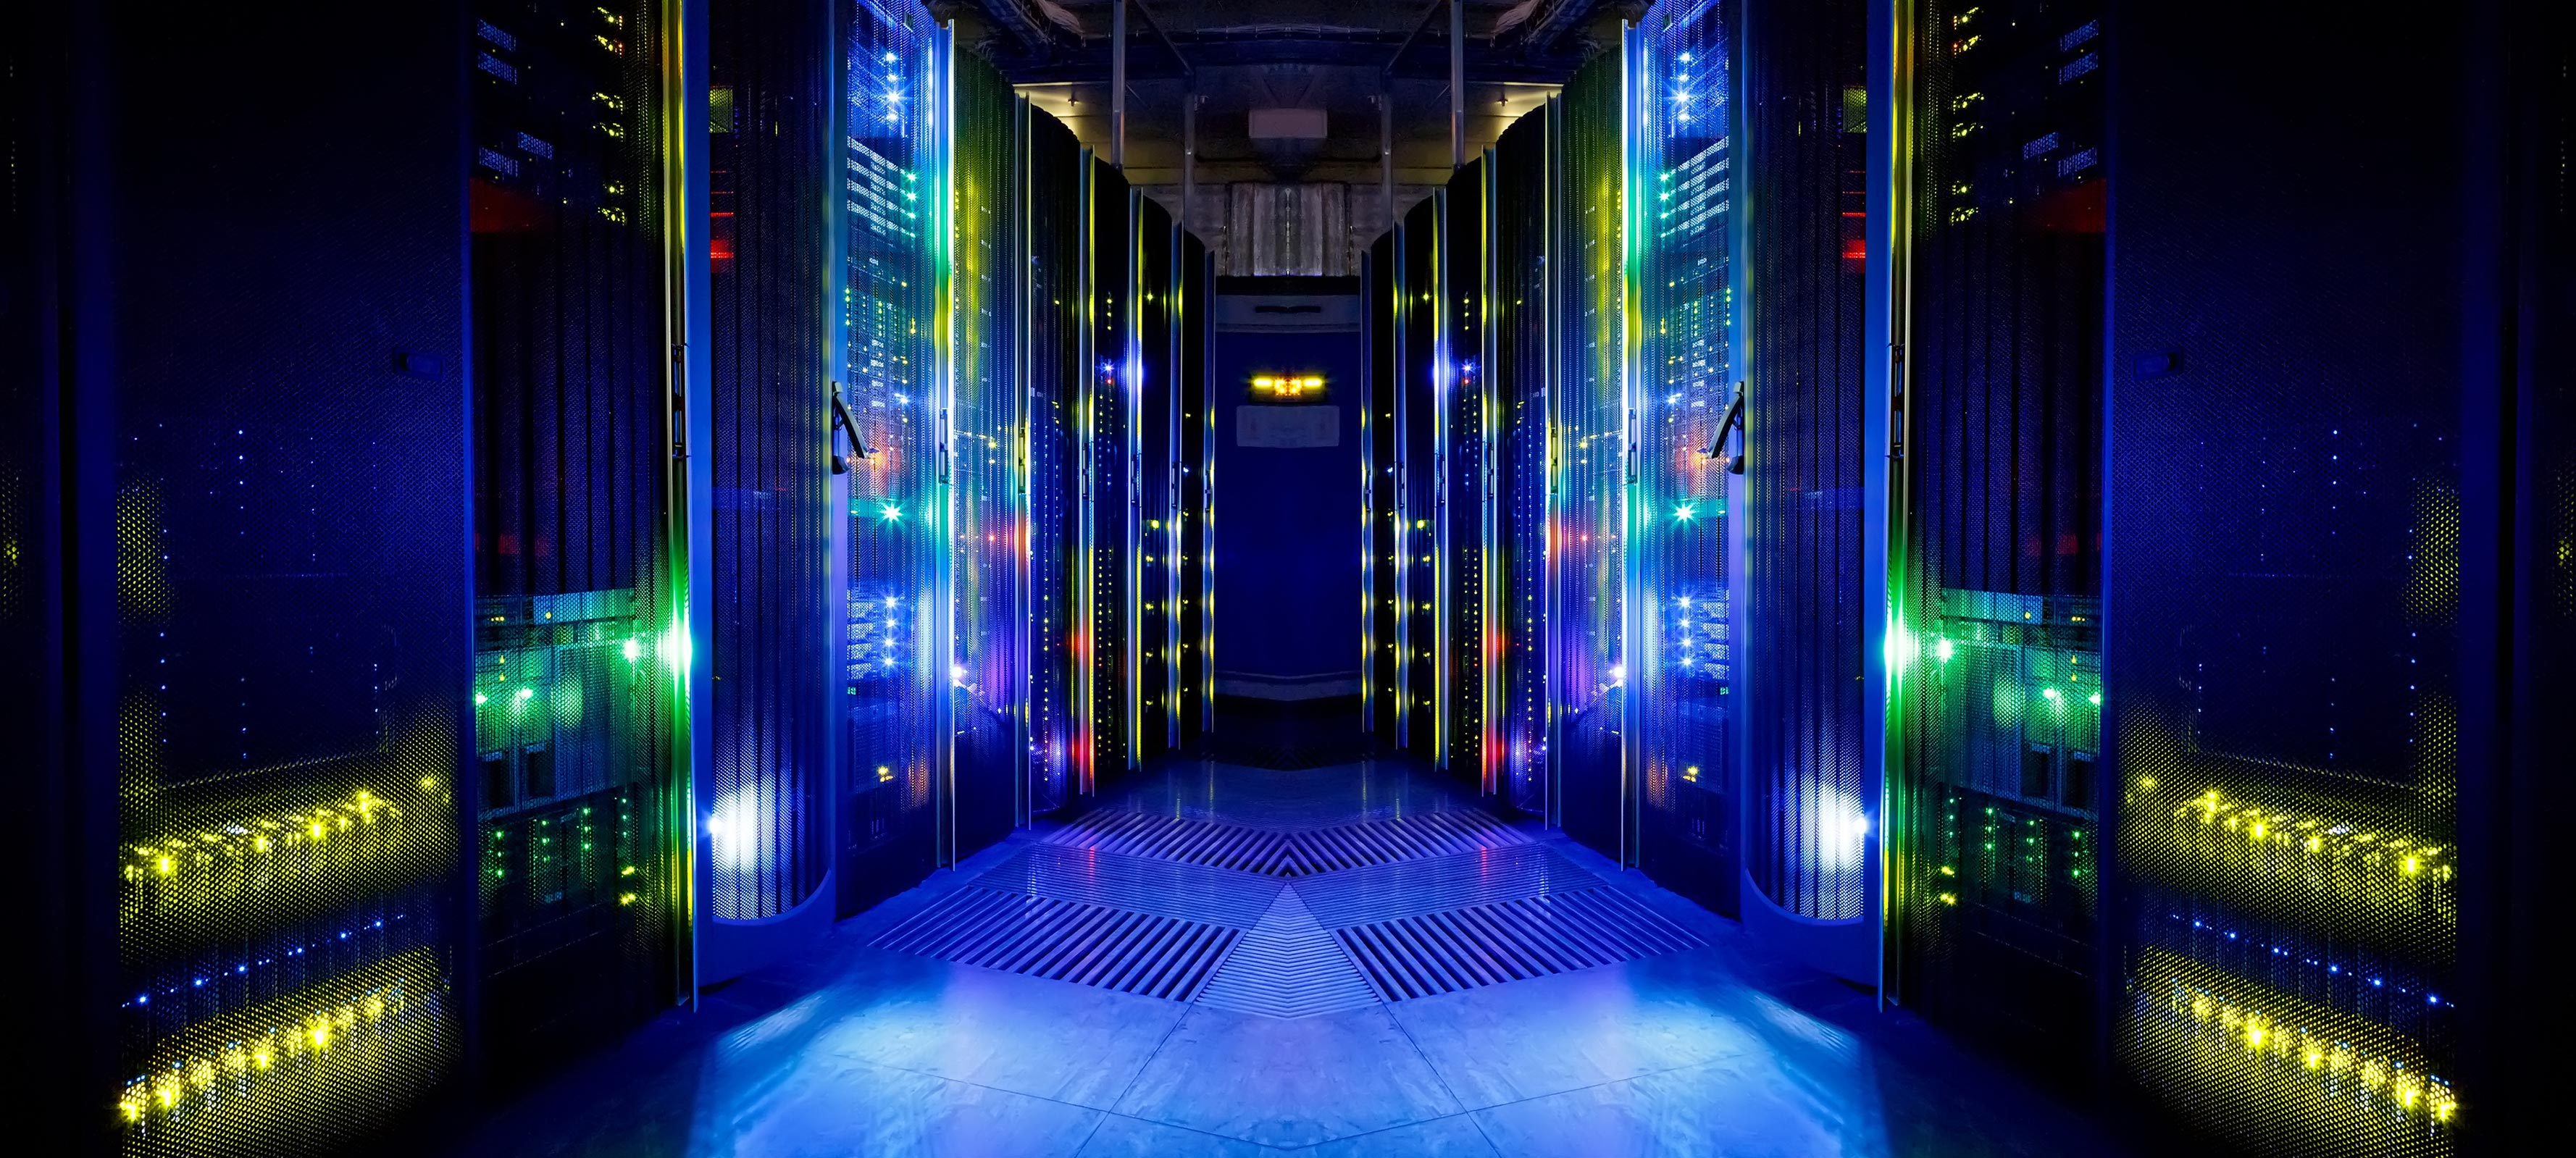 A server room inside a data center.